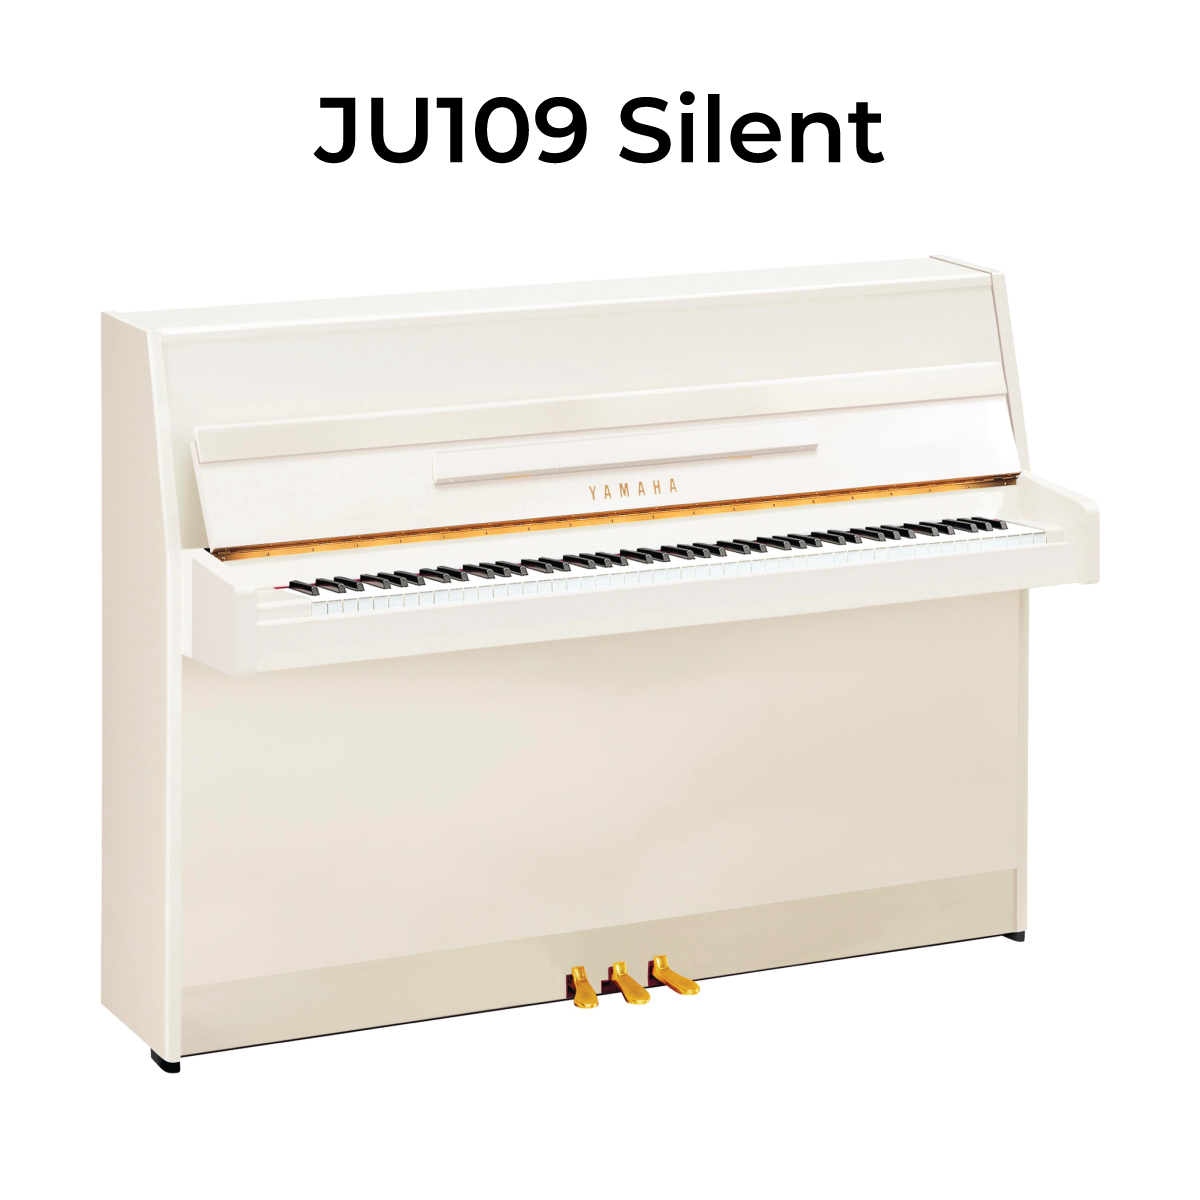 JU109